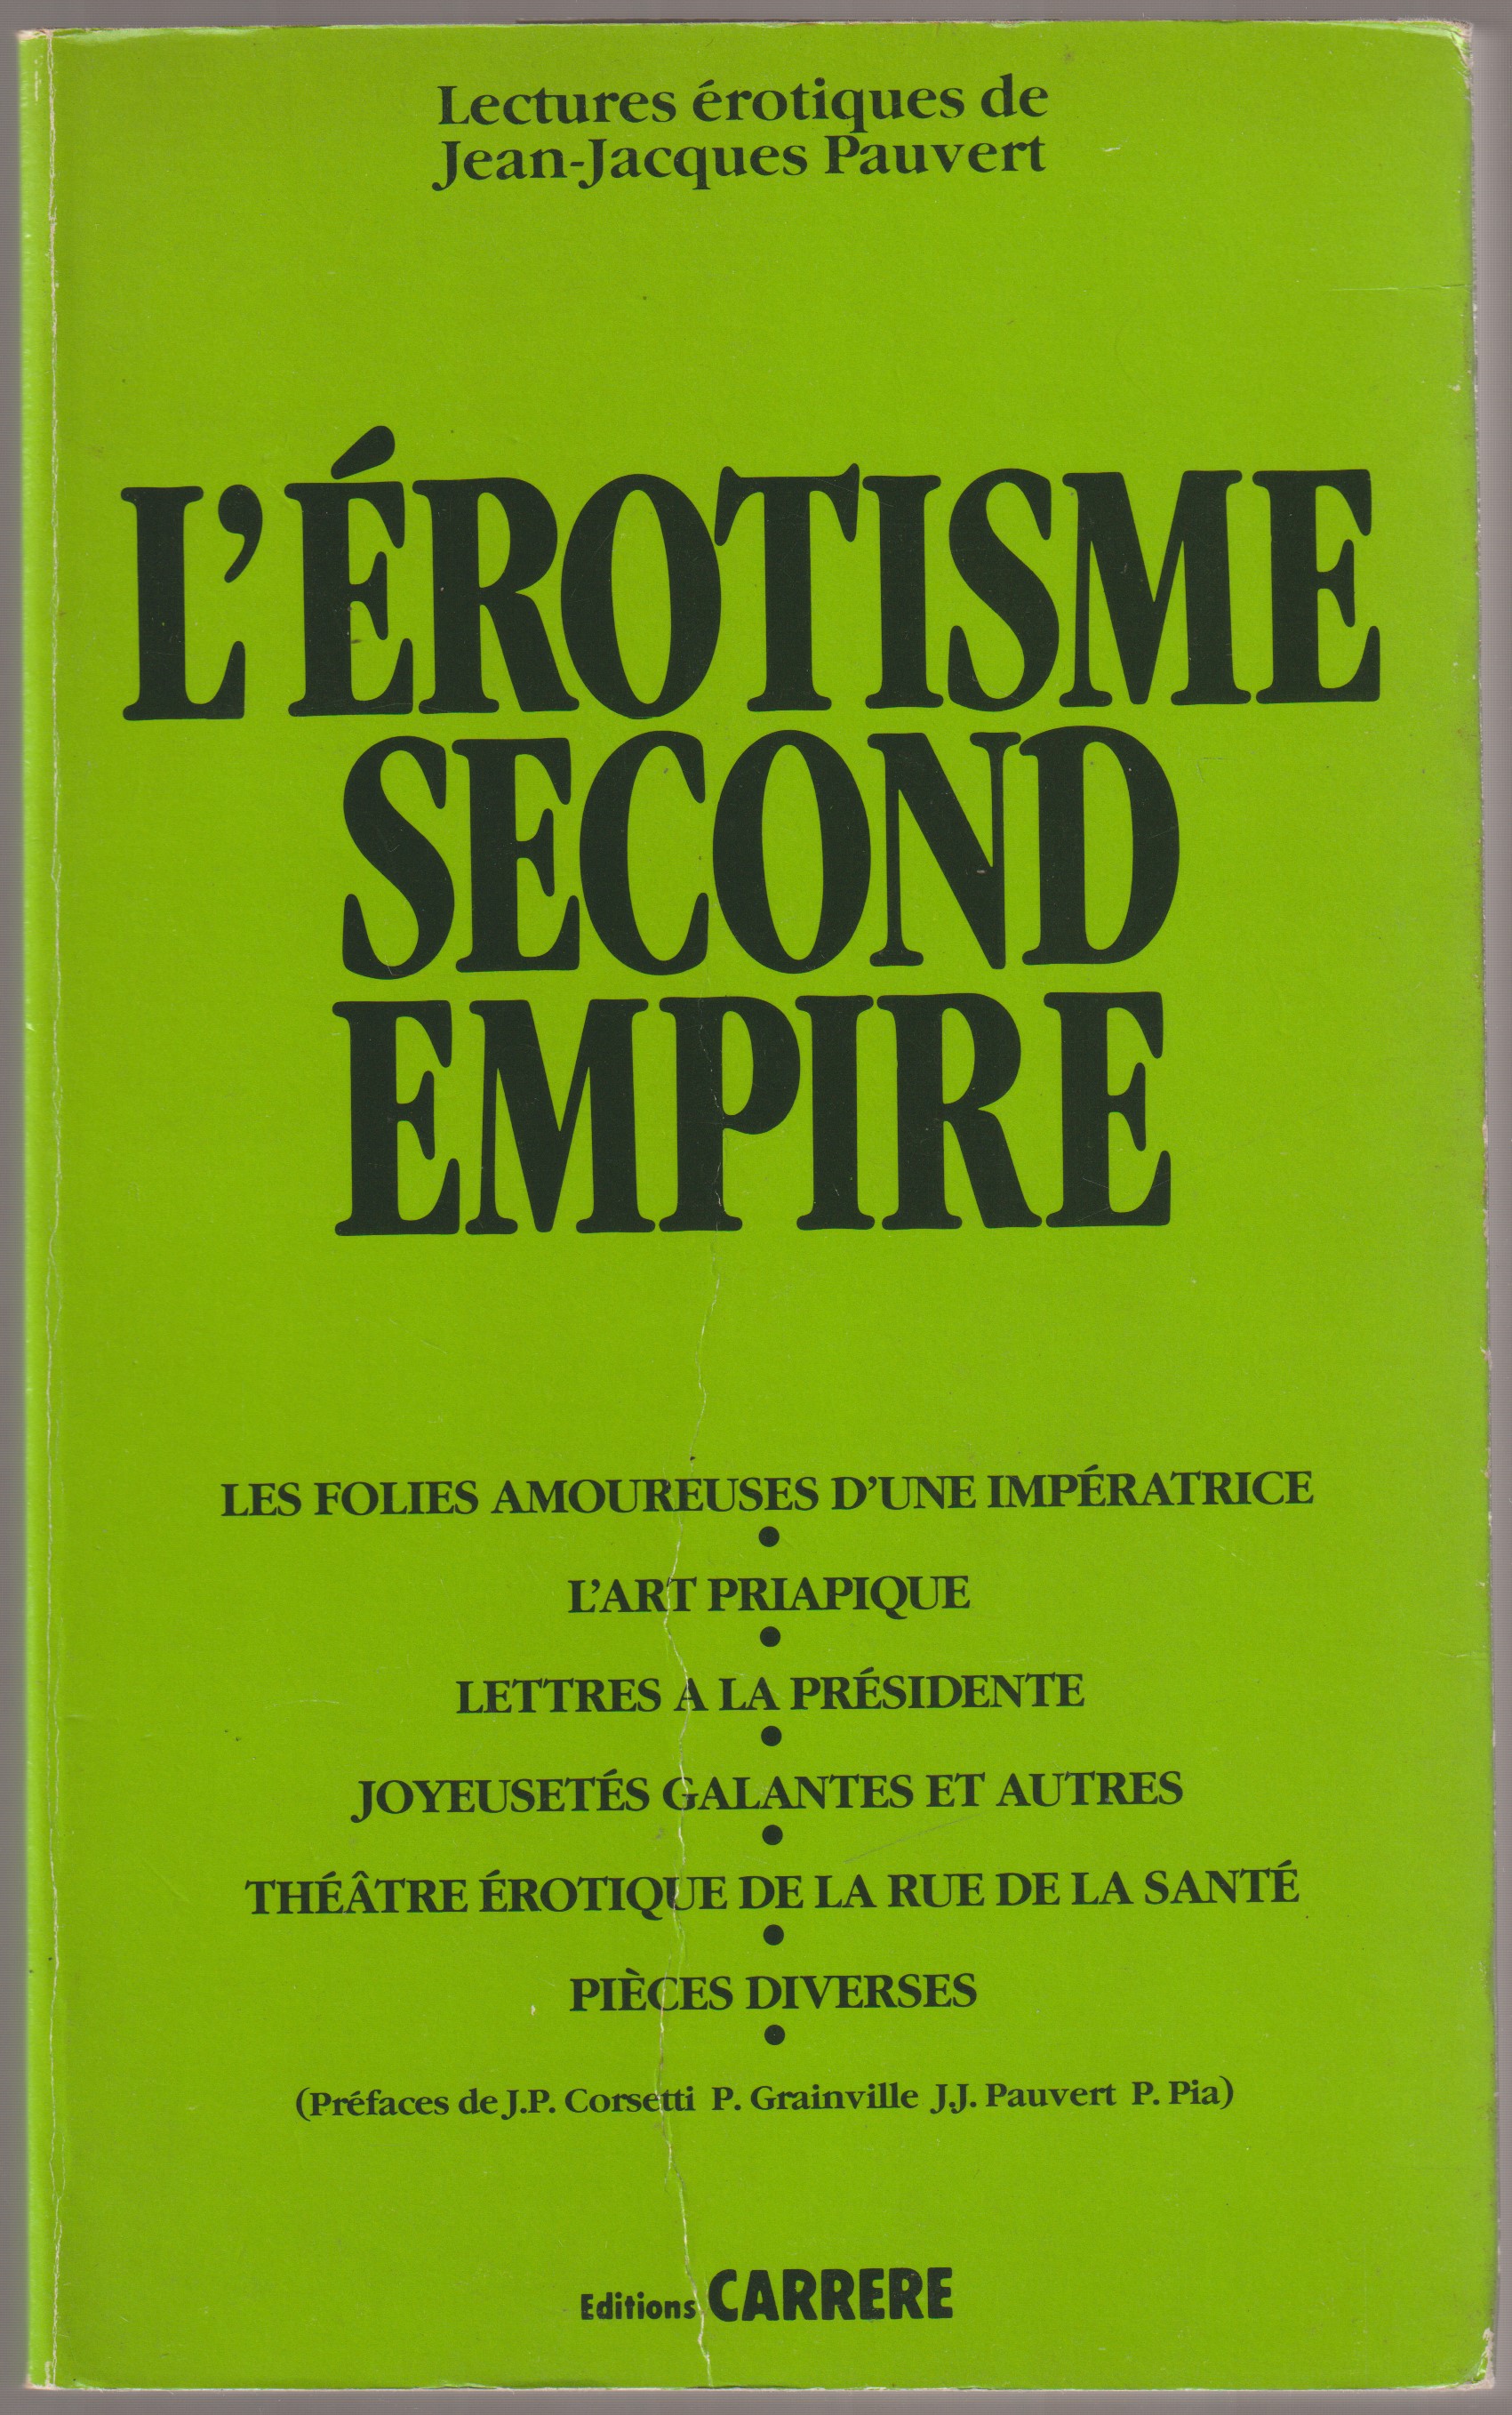 L'Erotisme second empire